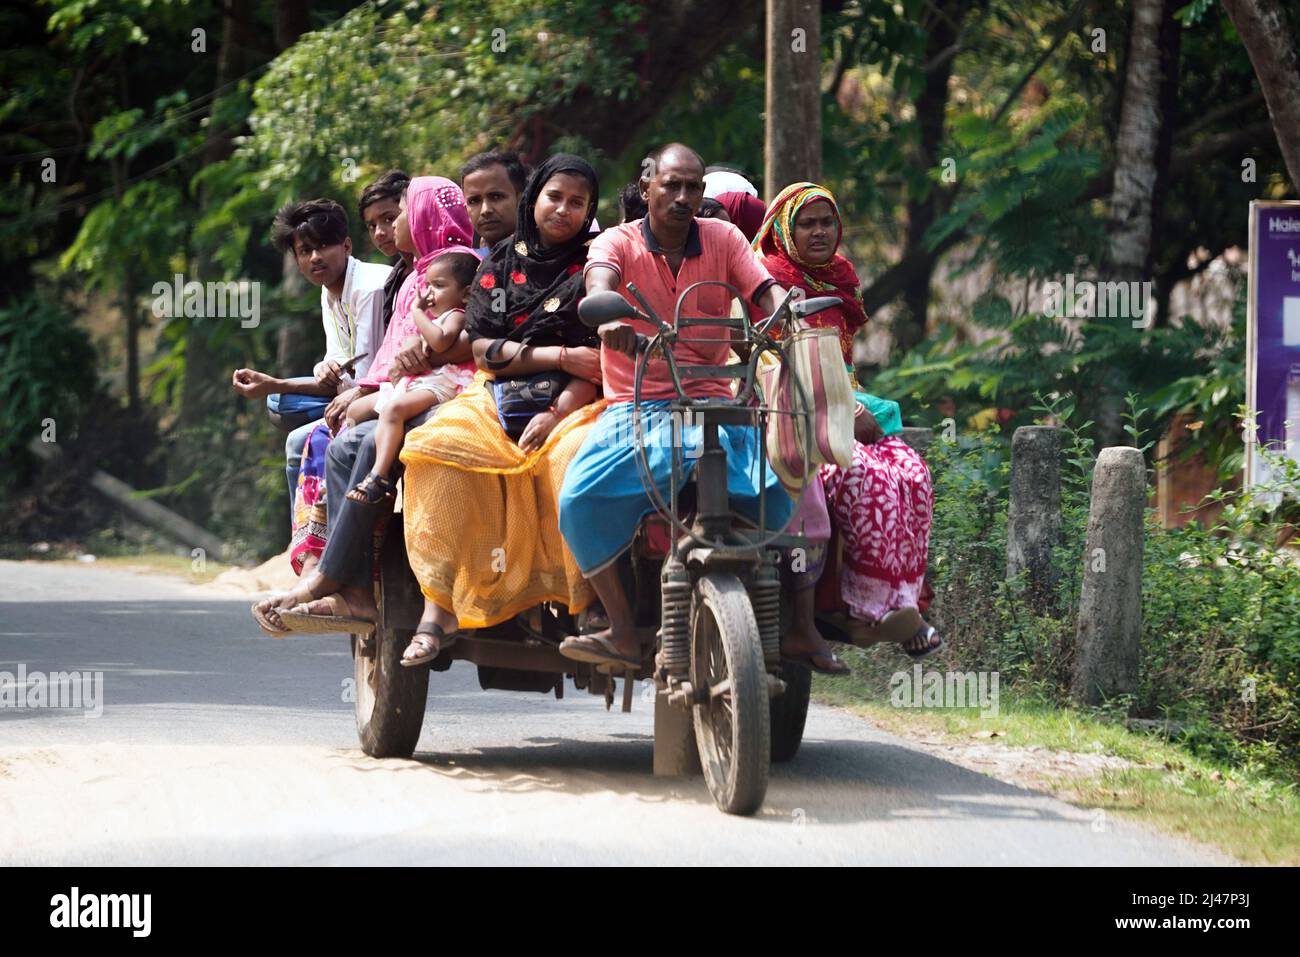 Passagers sur un tricycle à moteur, scène de rue à Baruipur près de Kolkata, Inde Banque D'Images